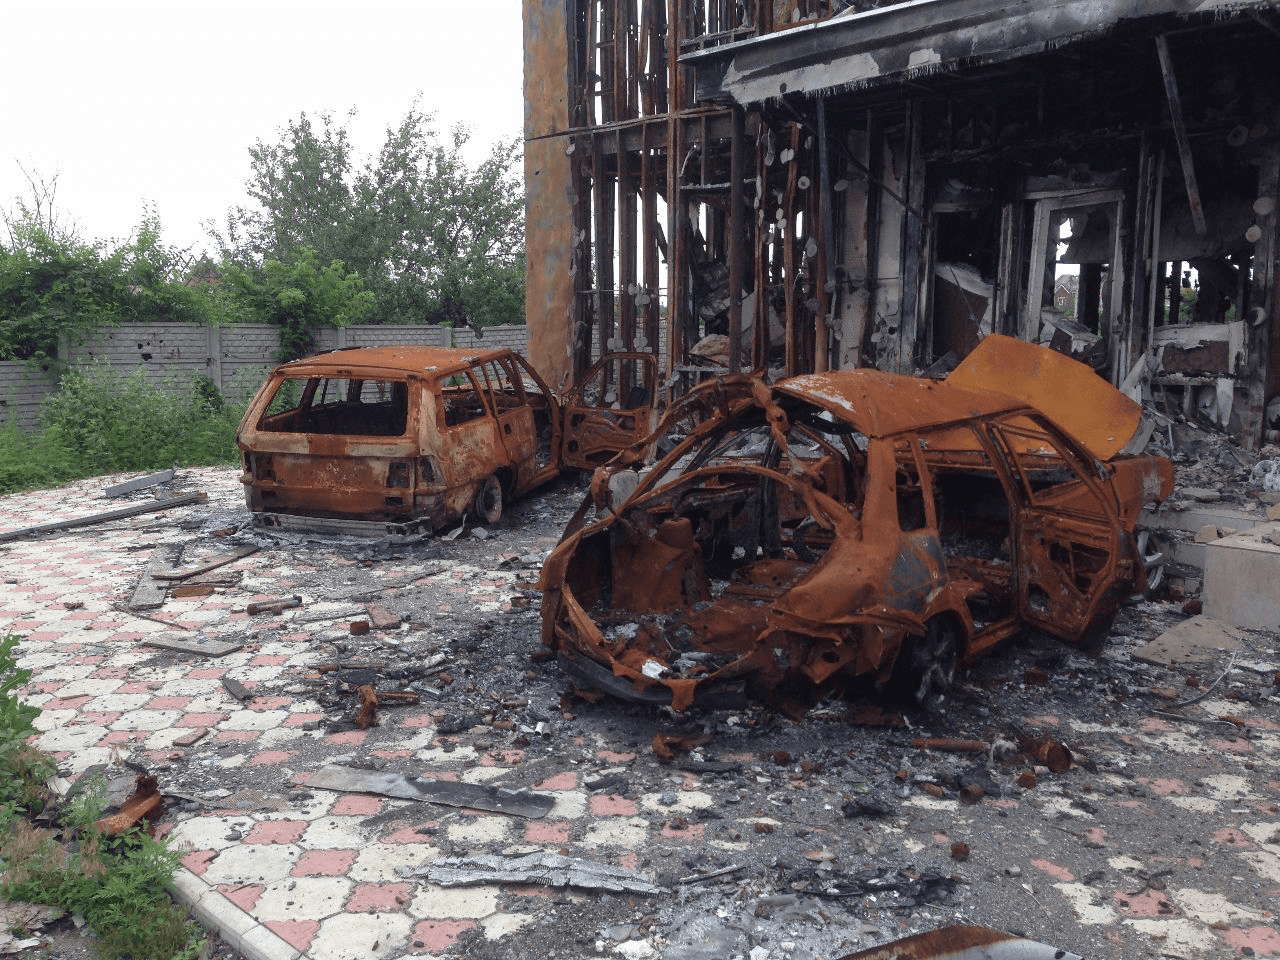 post war aftermath at Donbass